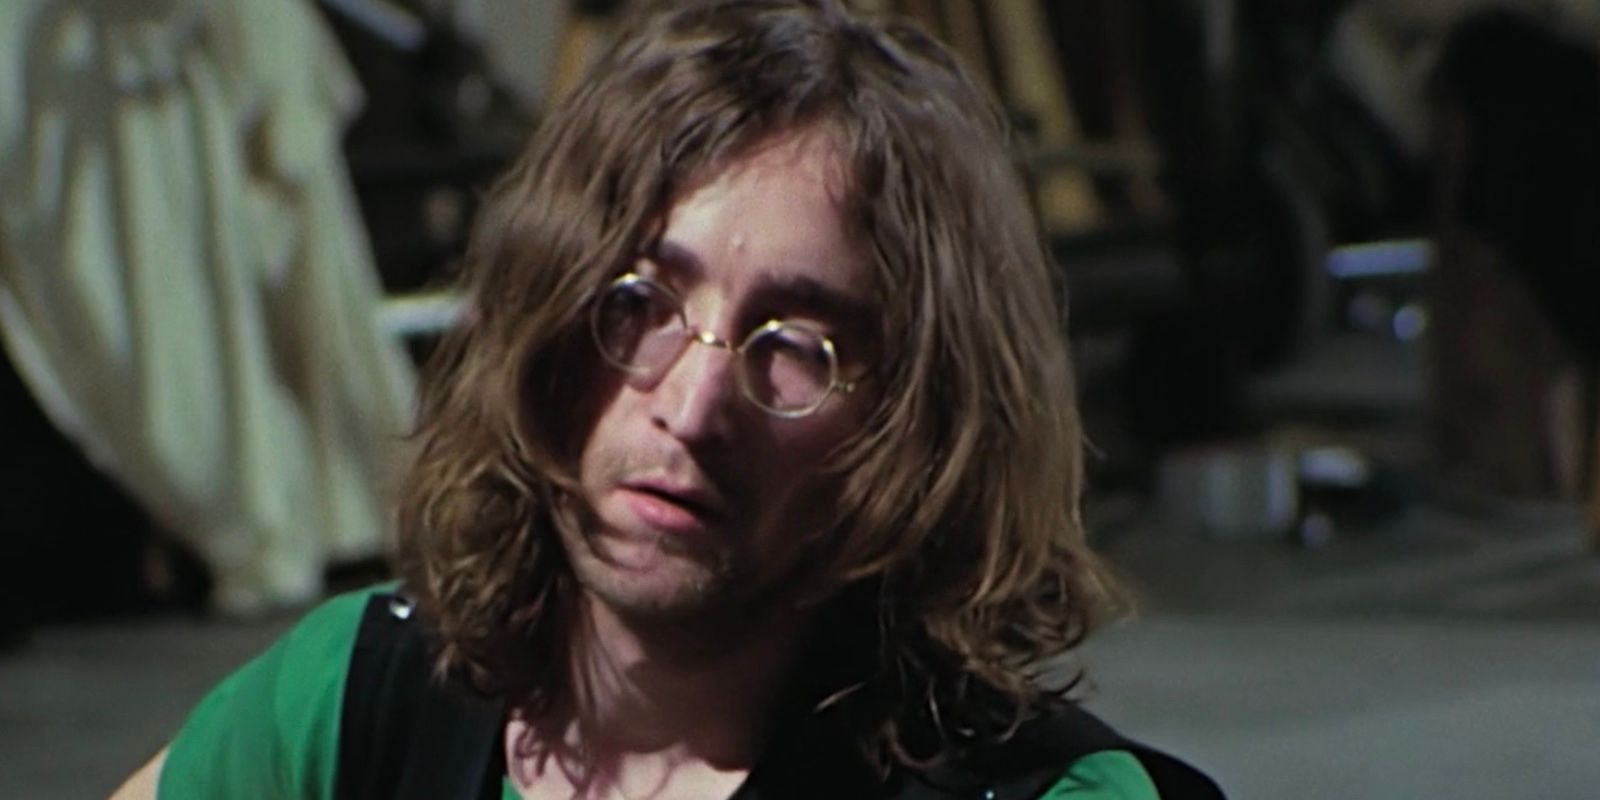 John Lennon during Get Back sessions